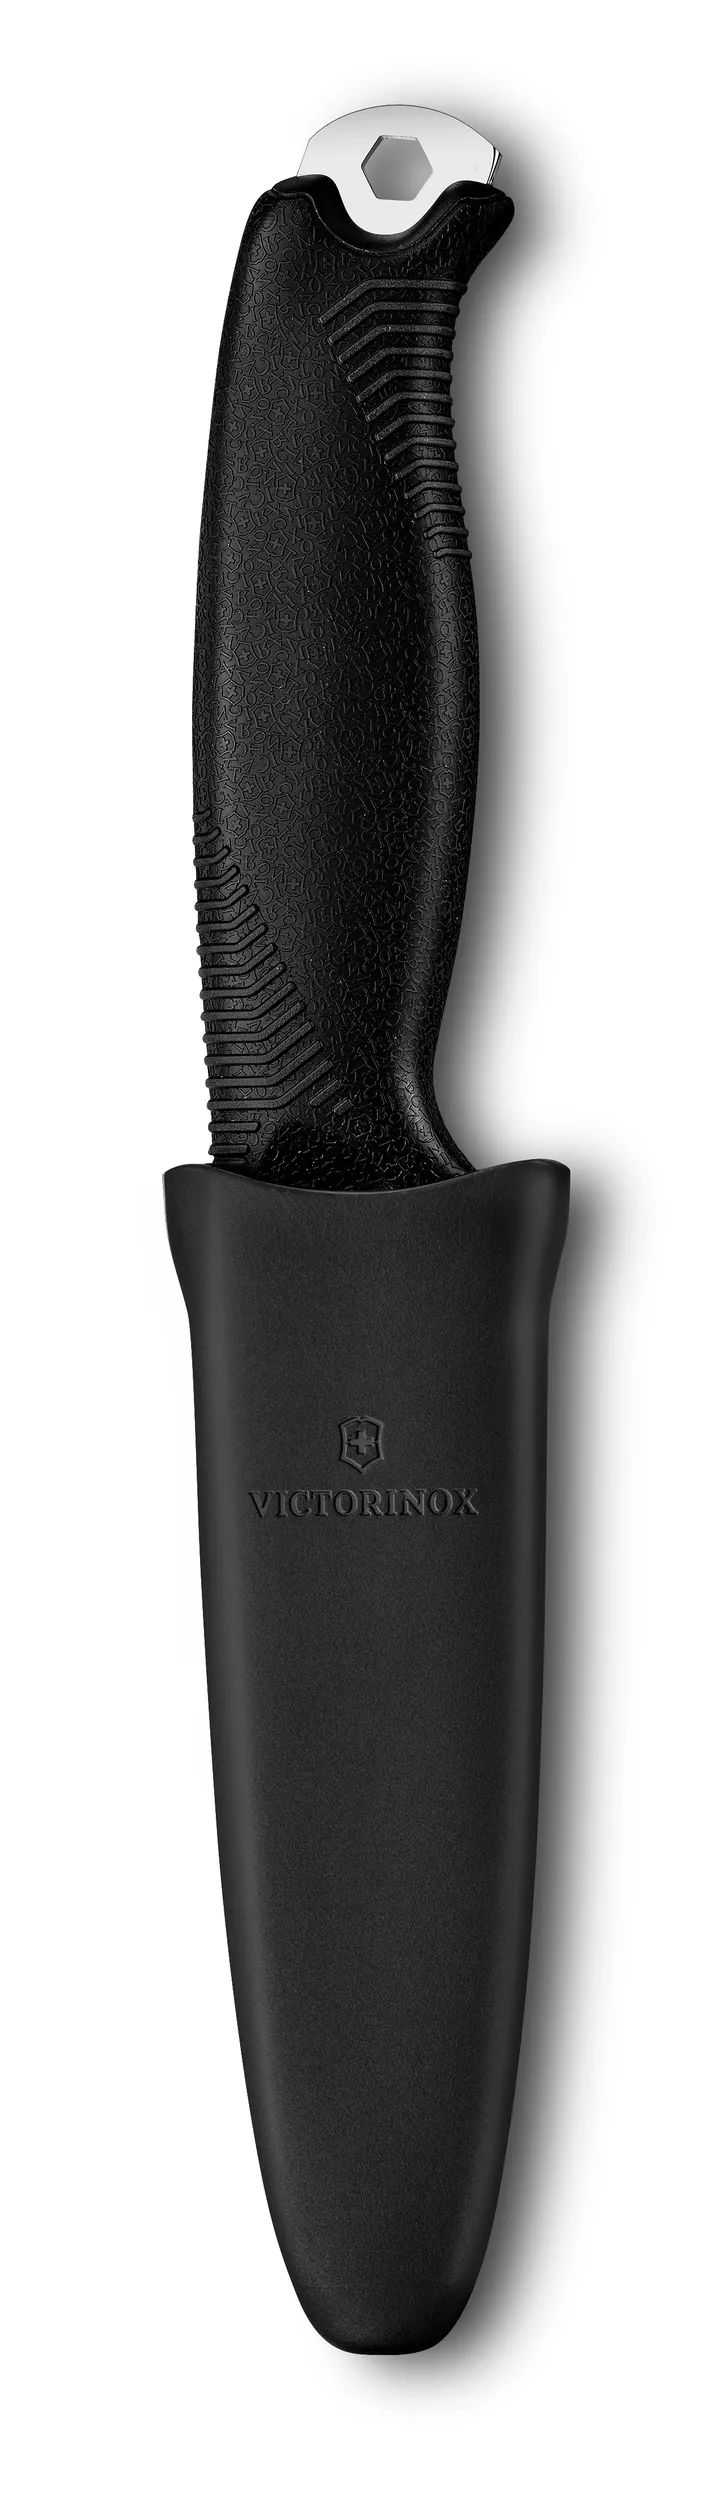 Victorinox VENTURE Black 3.0902.3 con acero inoxidable sandvik 14c28n.